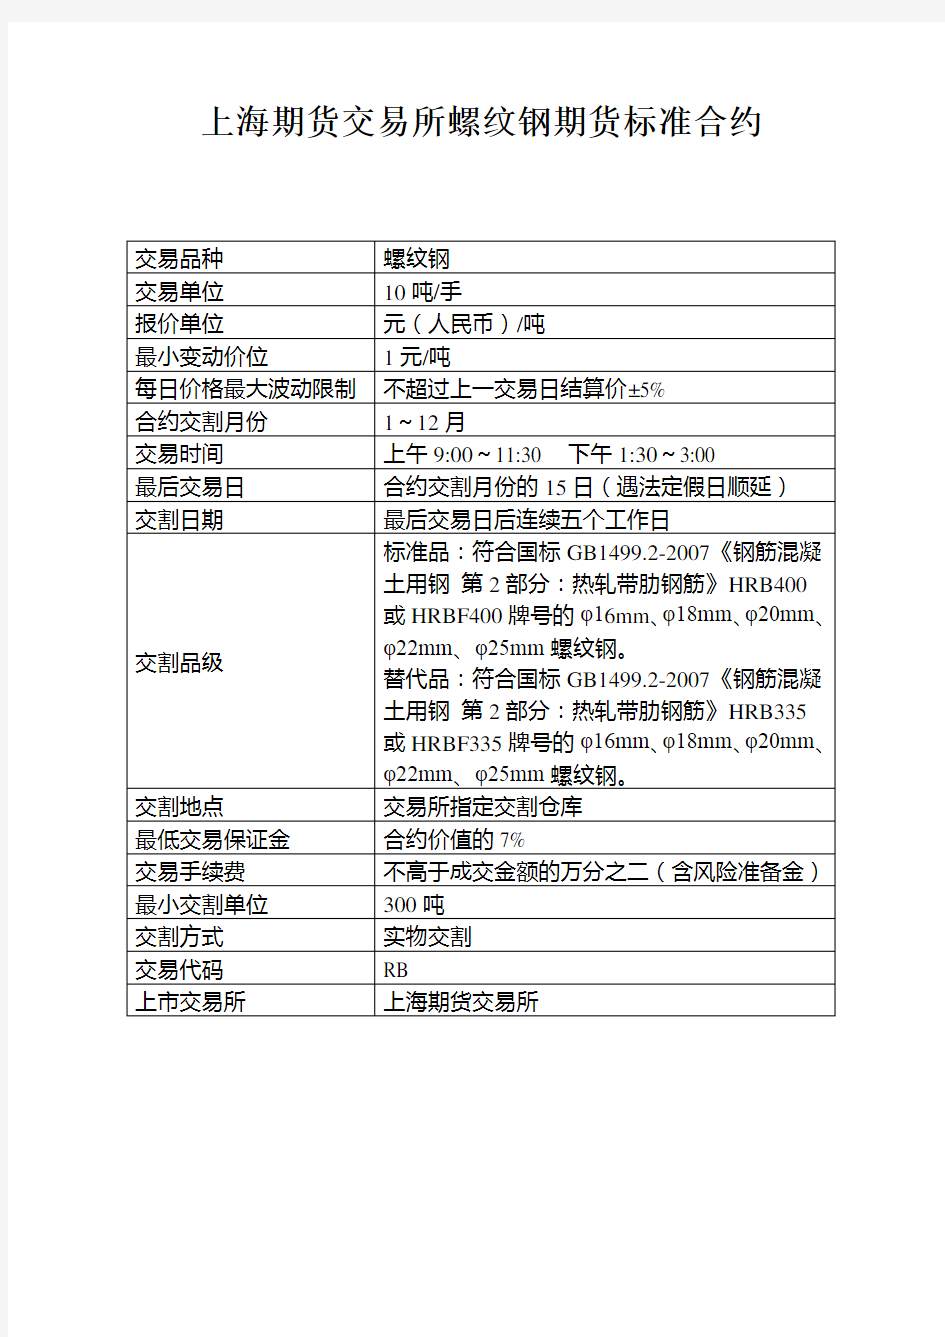 上海期货交易所螺纹钢期货标准合约